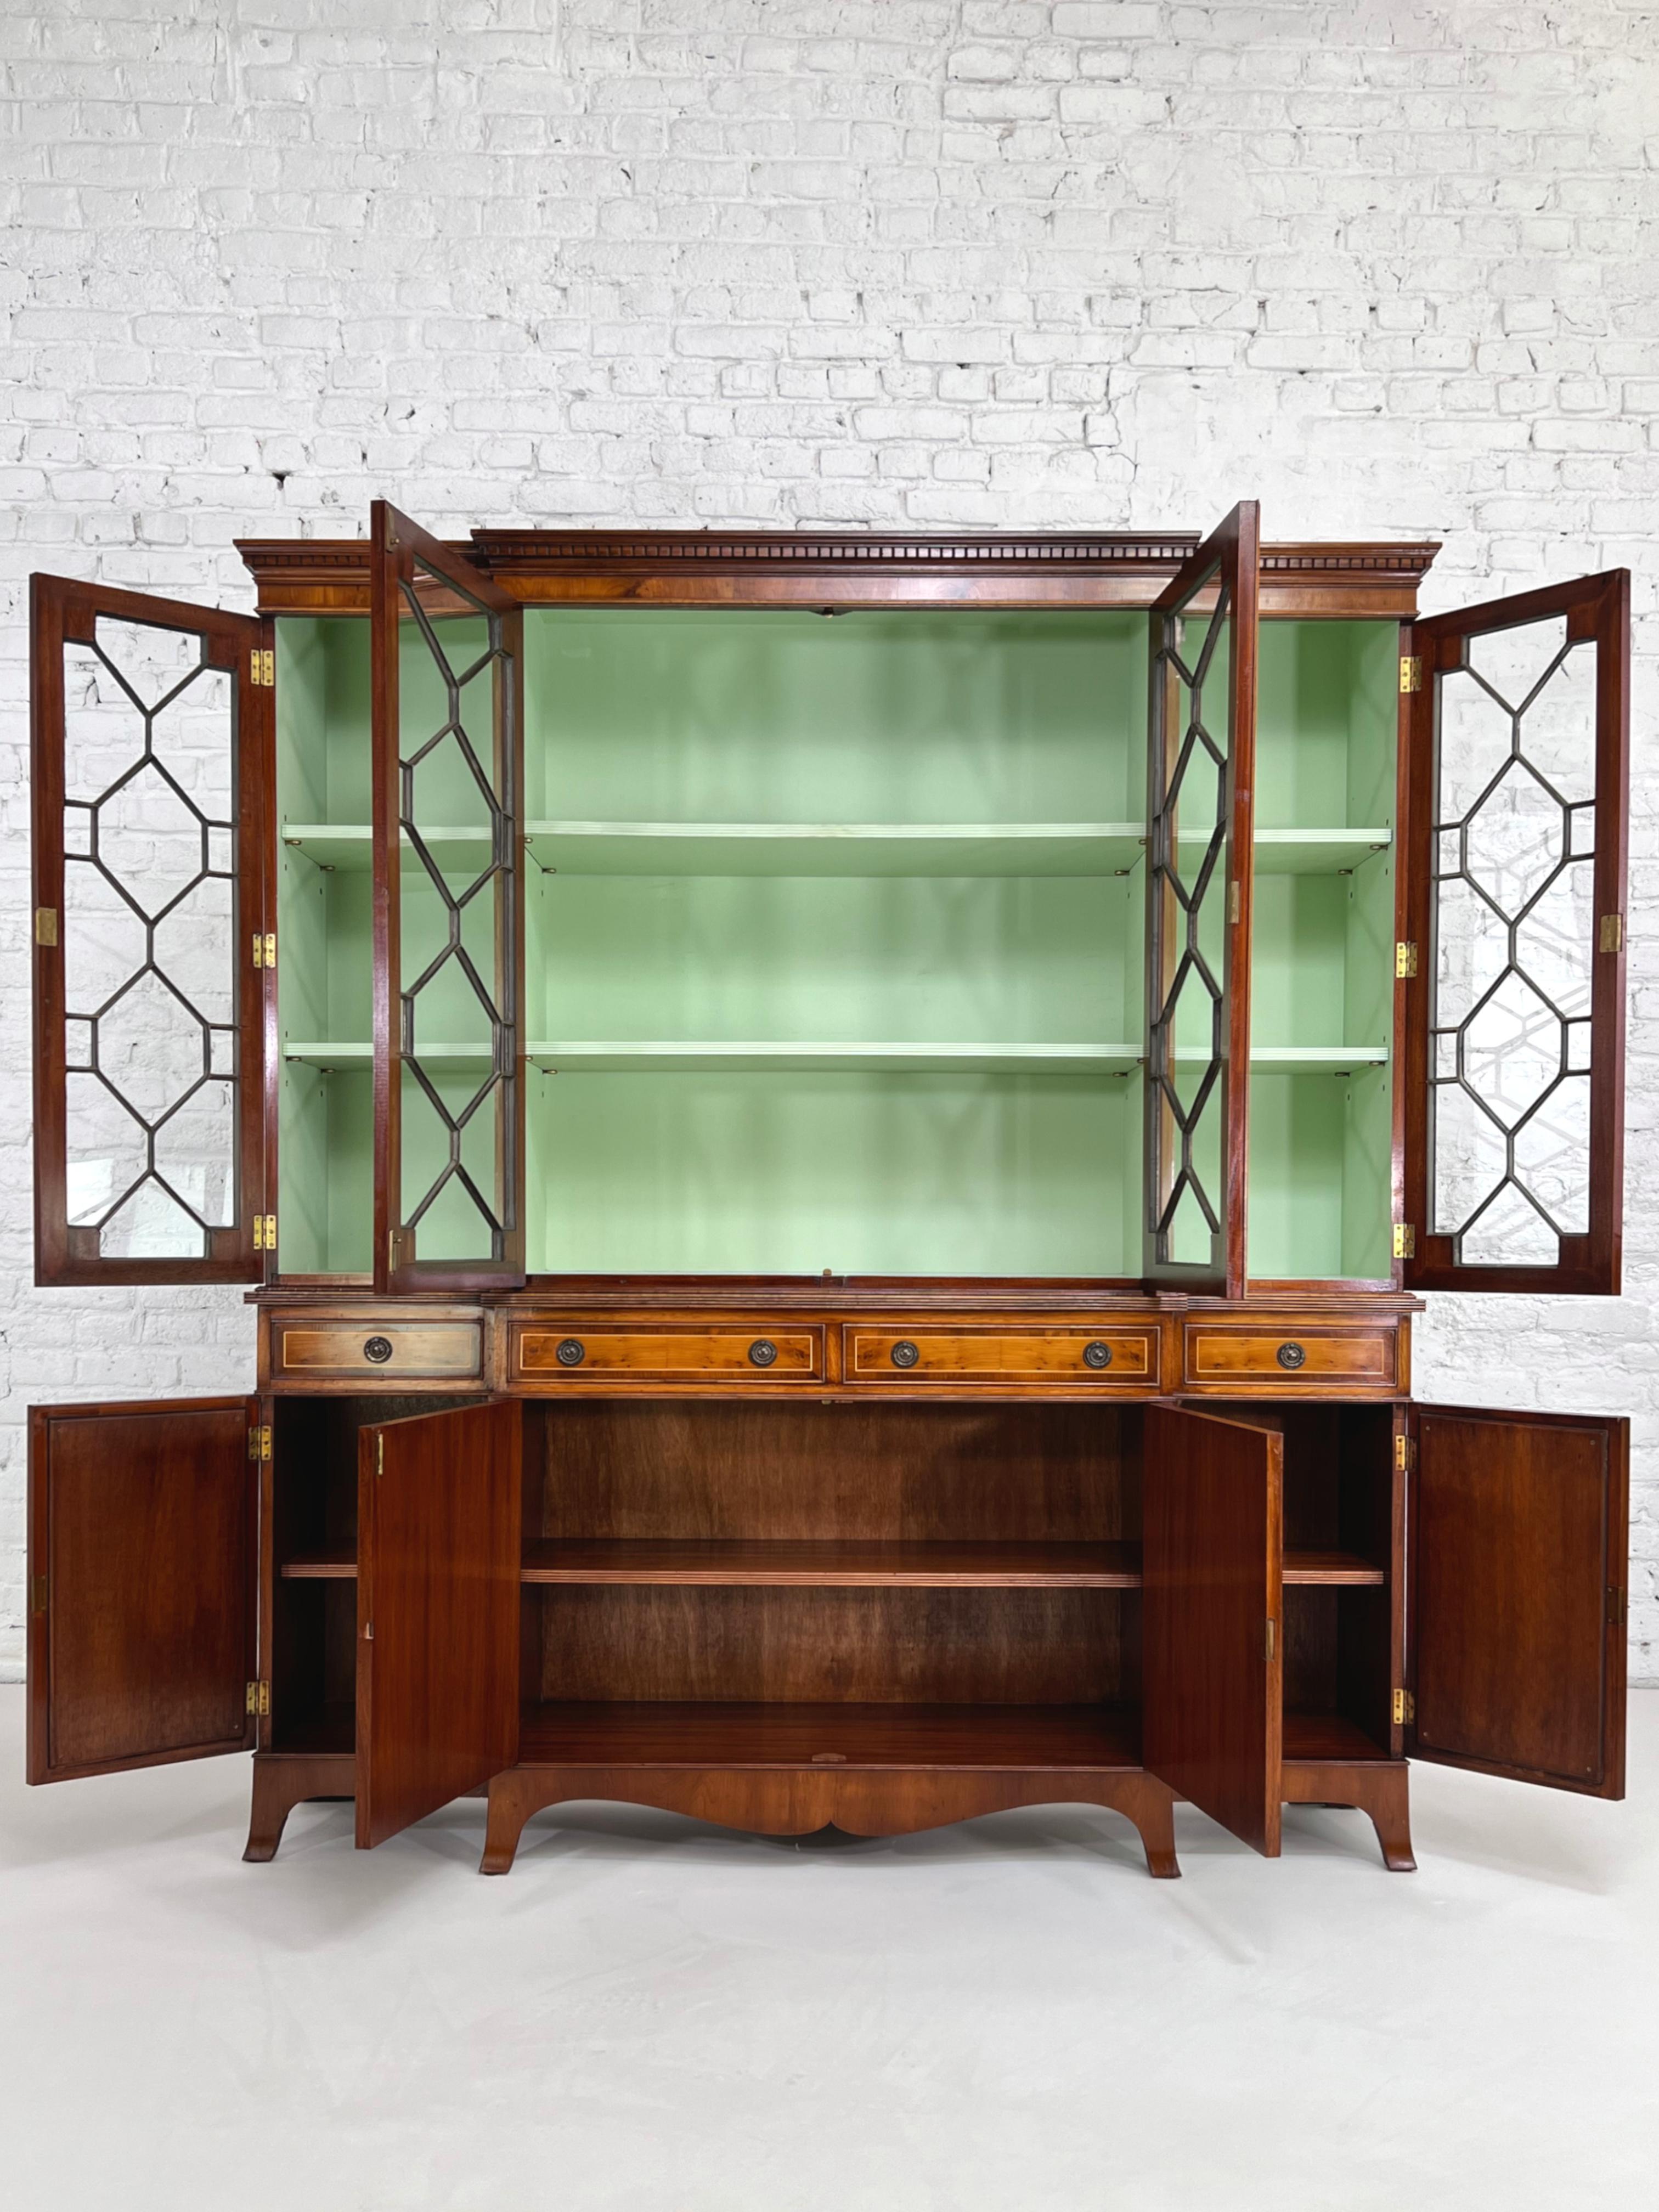 Libreria Antic in legno e vetro, mobile contenitore e vetrina In condizioni buone in vendita a Tourcoing, FR